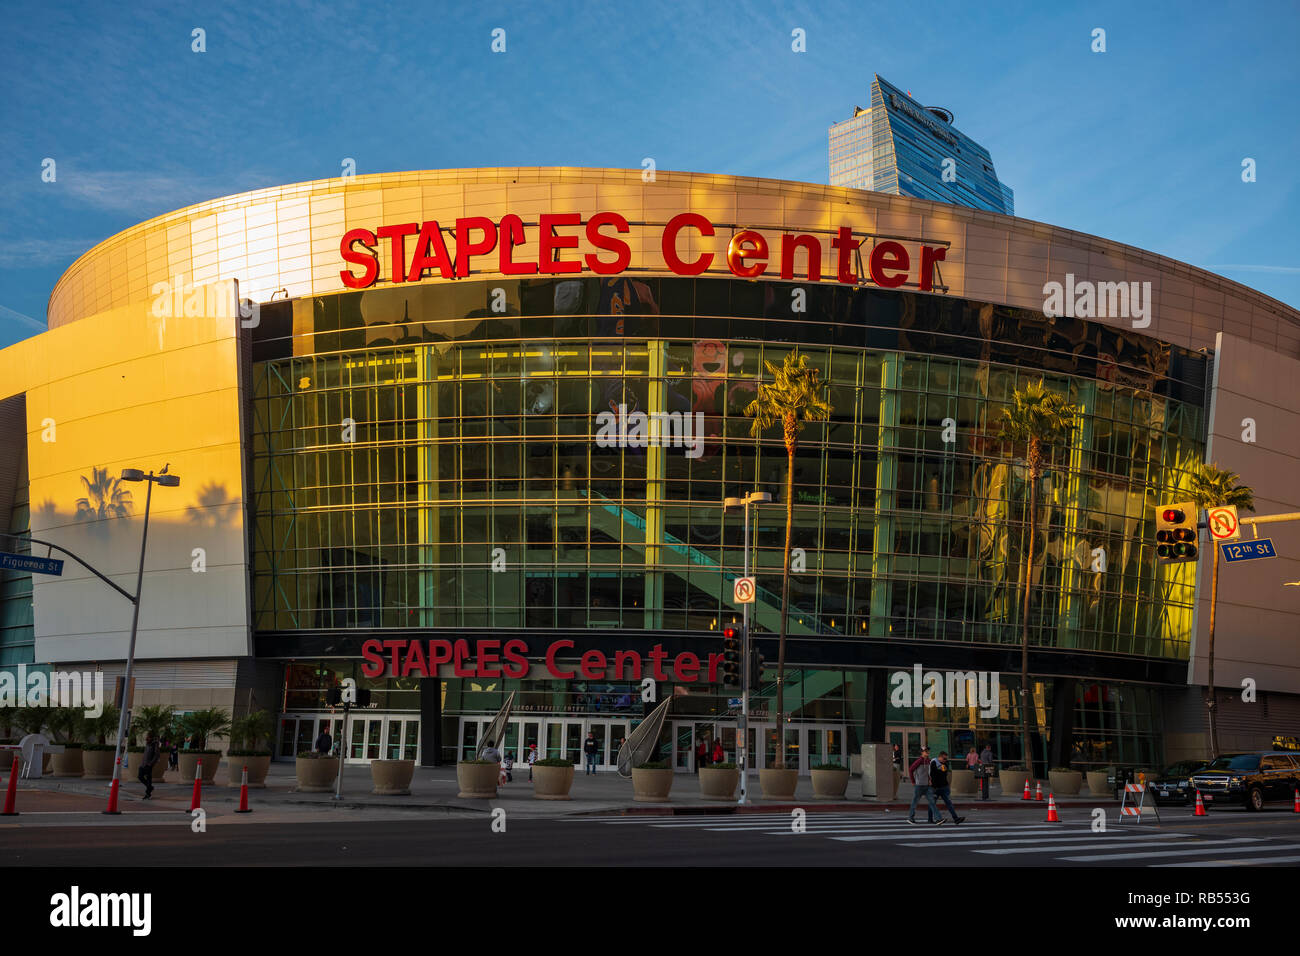 STAPLES Center est une salle omnisports arena dans le centre-ville de Los Angeles, en Californie, de l'accueil et la Lakers LA Clippers de la NBA. Banque D'Images